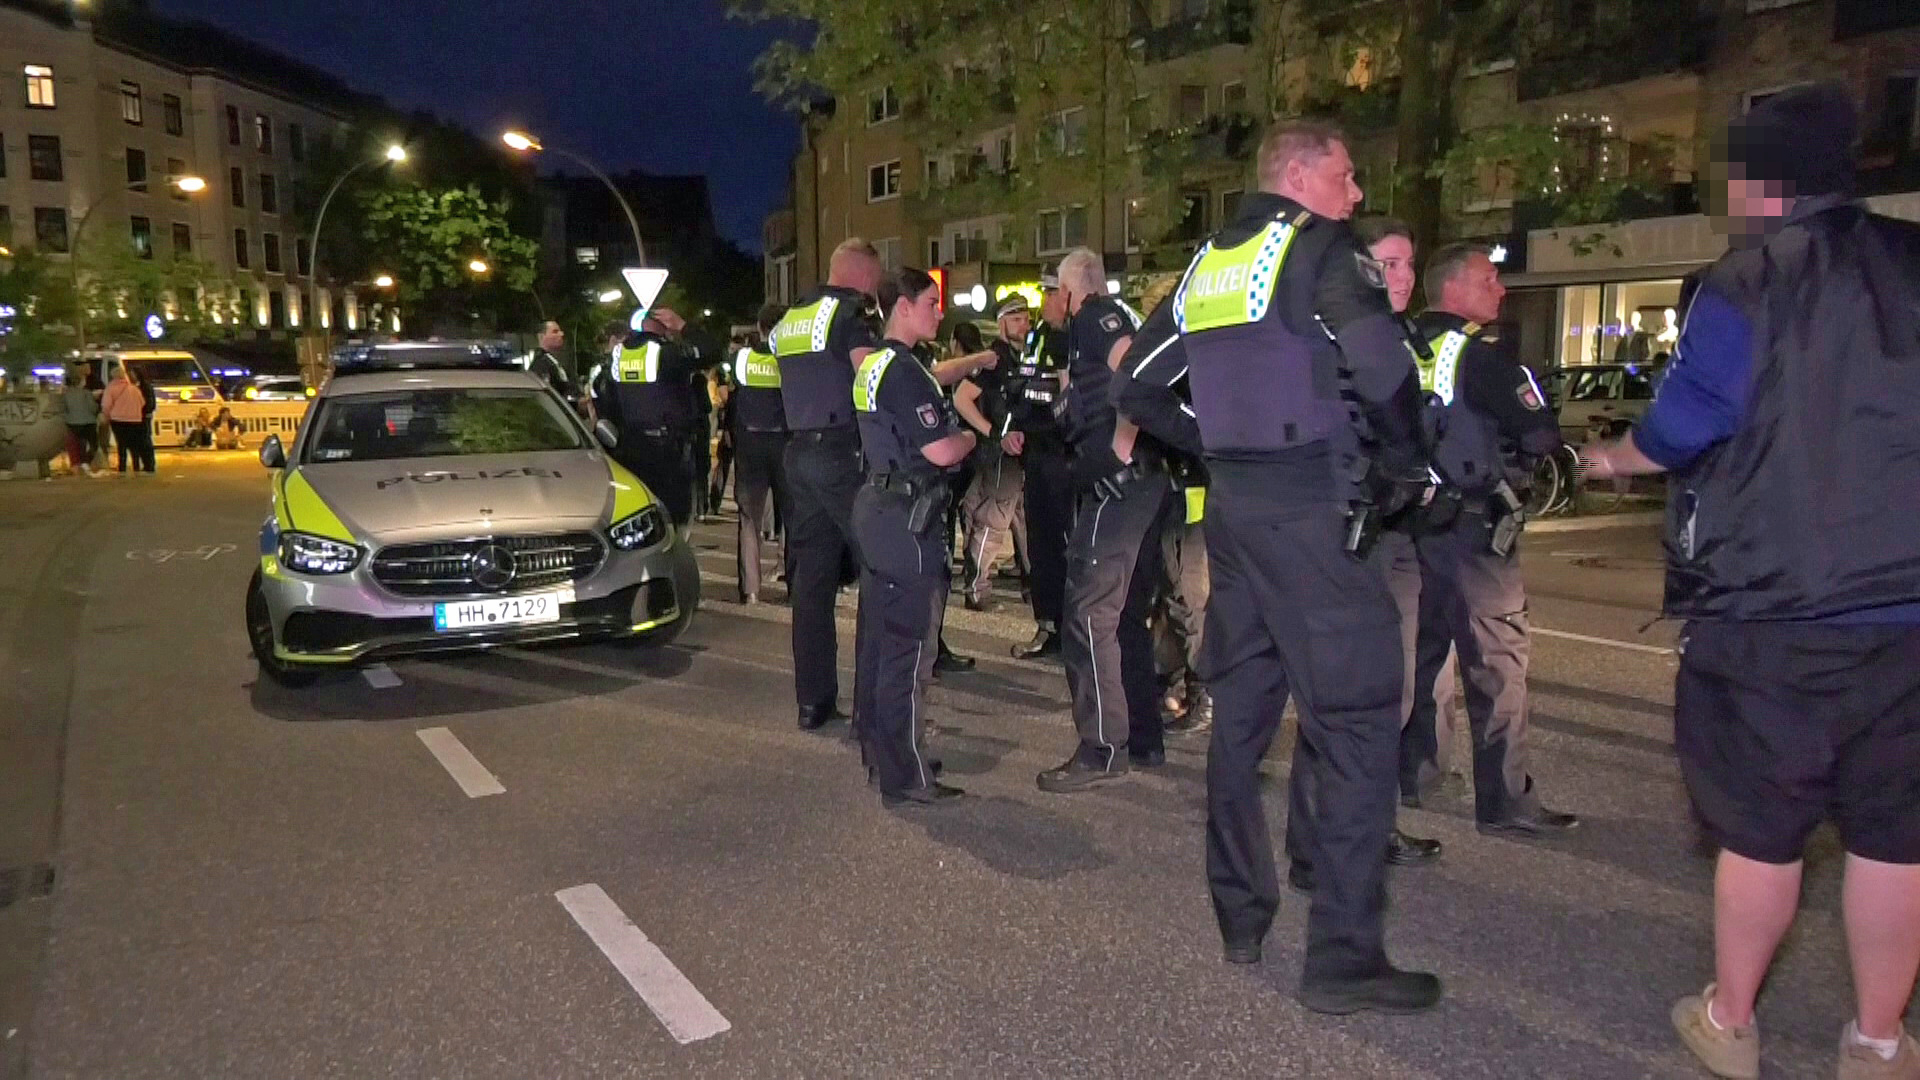 Polizisten im Gespräch mit Zeugen nach der Auseinandersetzung auf dem Osterstraßenfest.